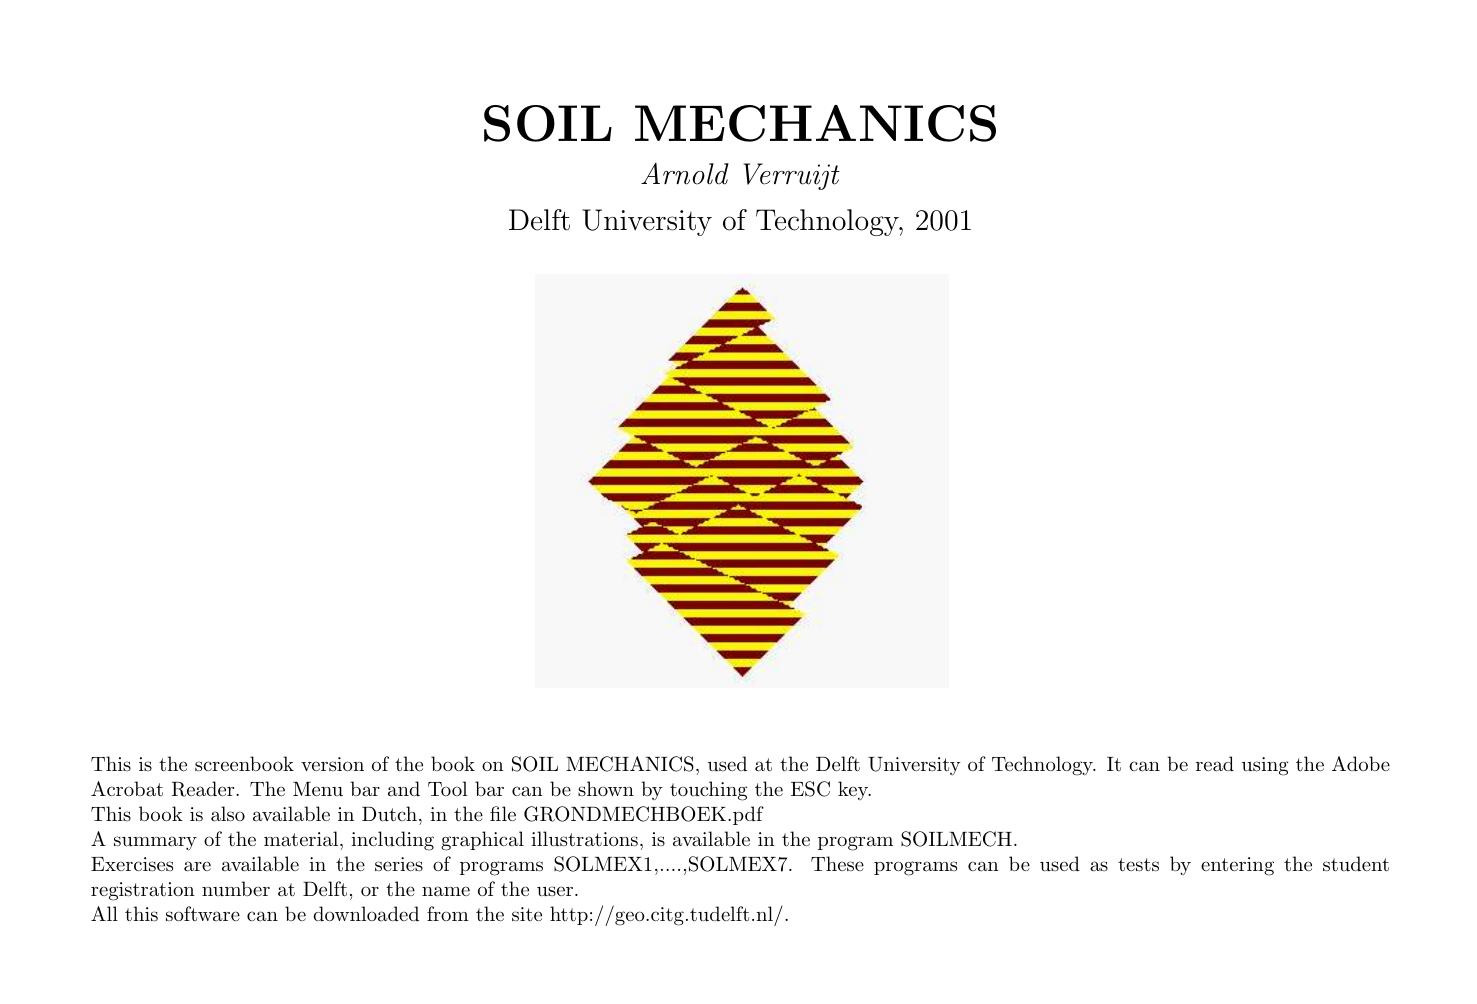 Verruijt.-.SOIL.MECHANICS.(2001)